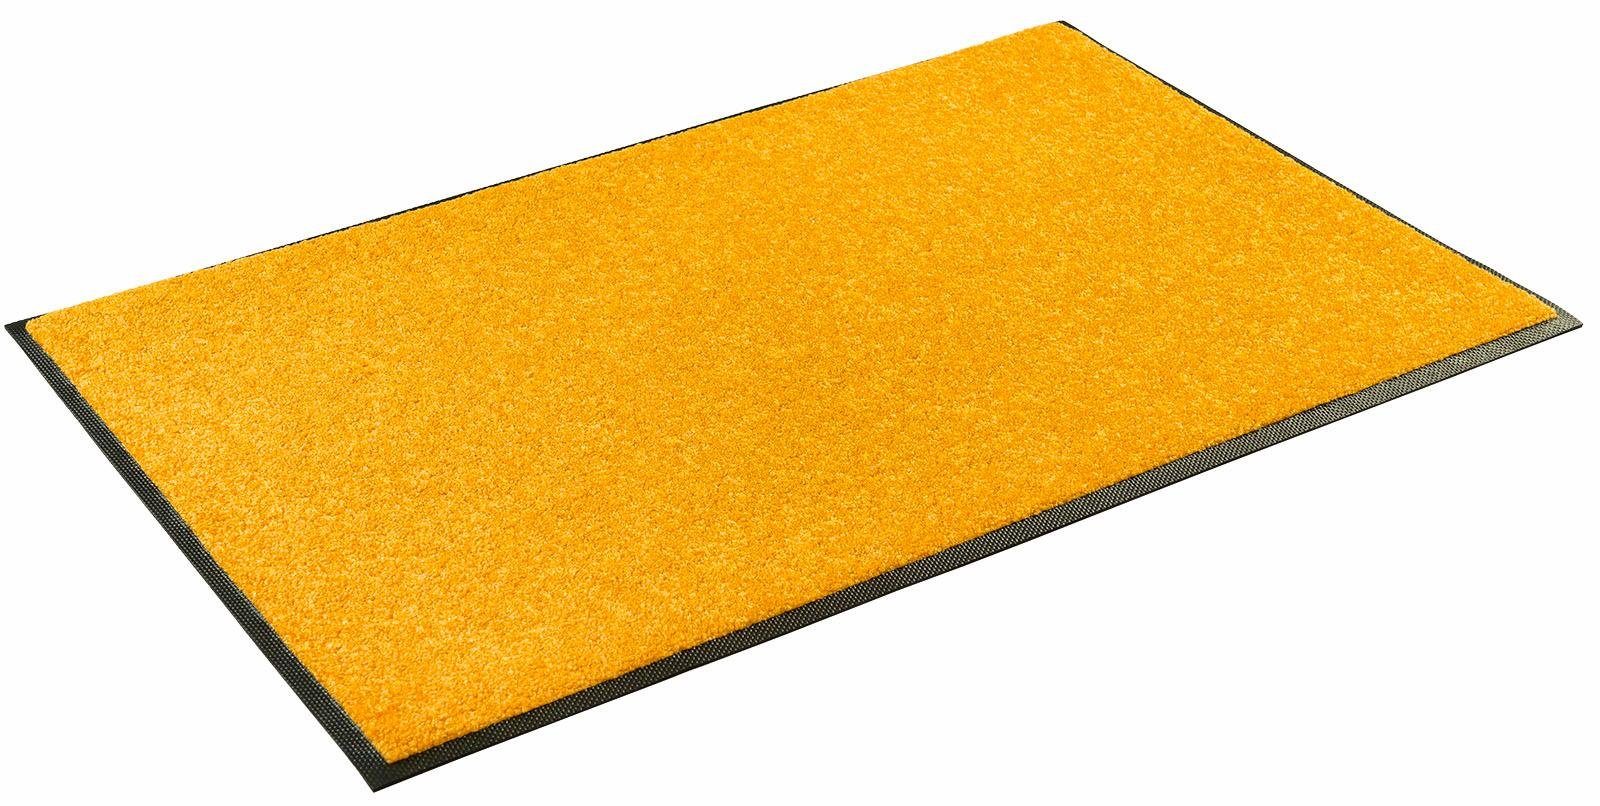 Goldene Fußmatten online kaufen » Gold Fußmatten | OTTO